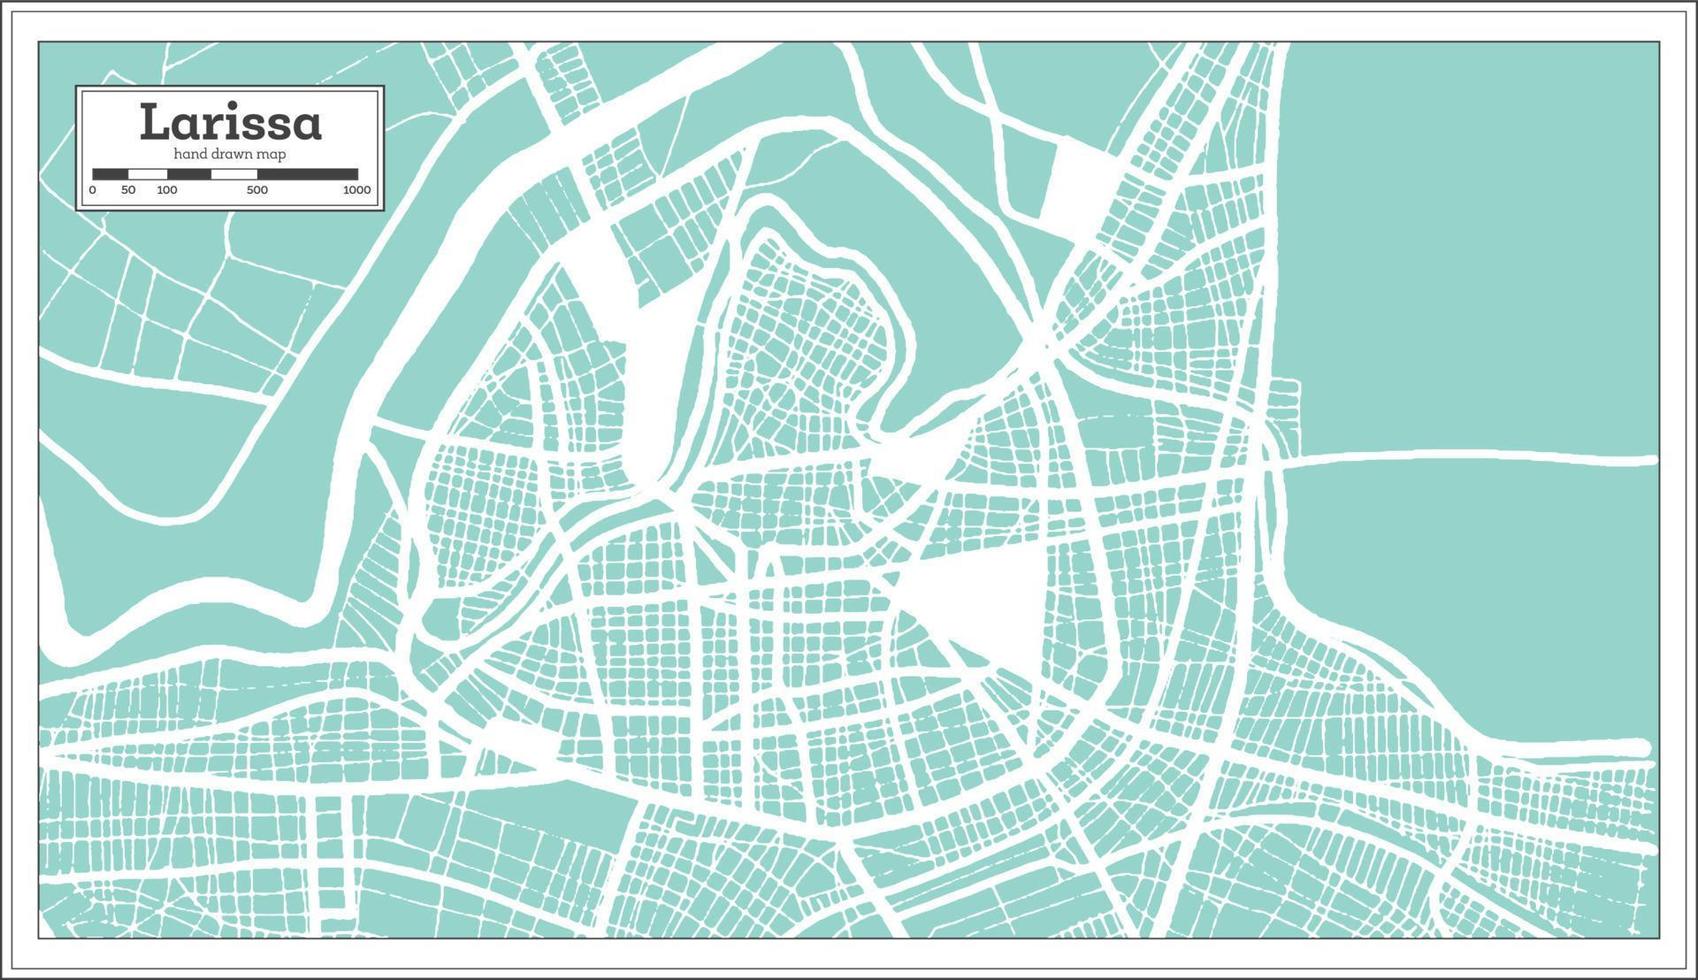 Larissa Griechenland Stadtplan im Retro-Stil. Übersichtskarte. vektor